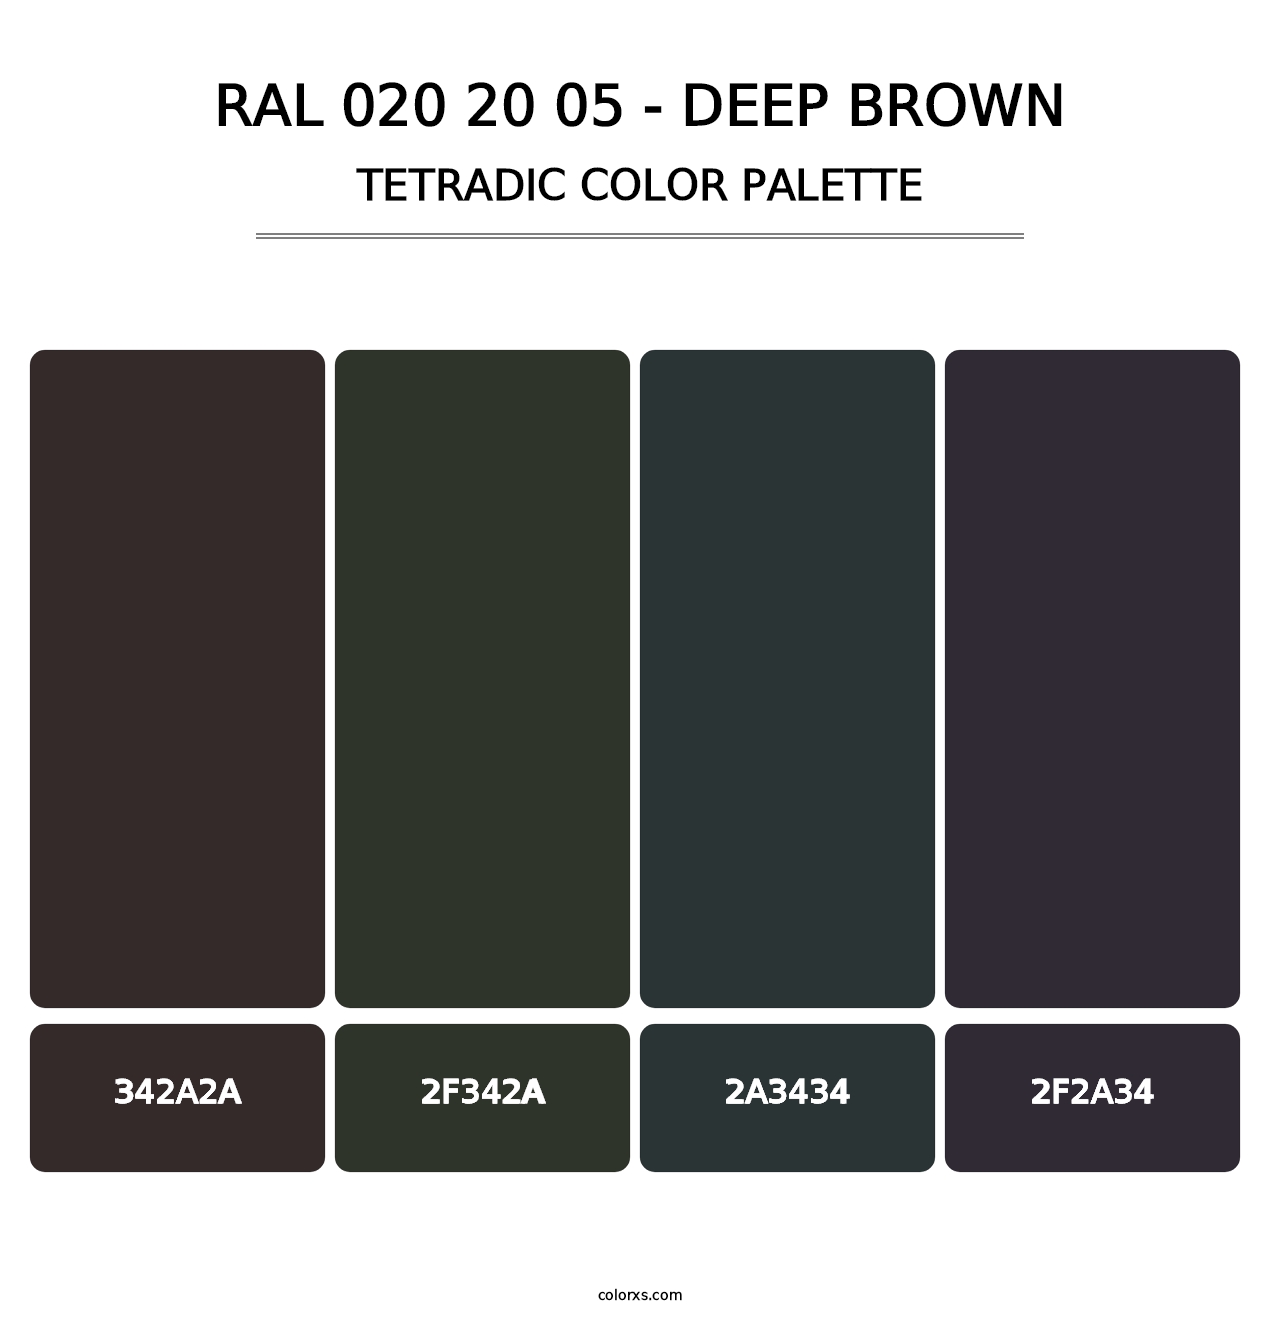 RAL 020 20 05 - Deep Brown - Tetradic Color Palette